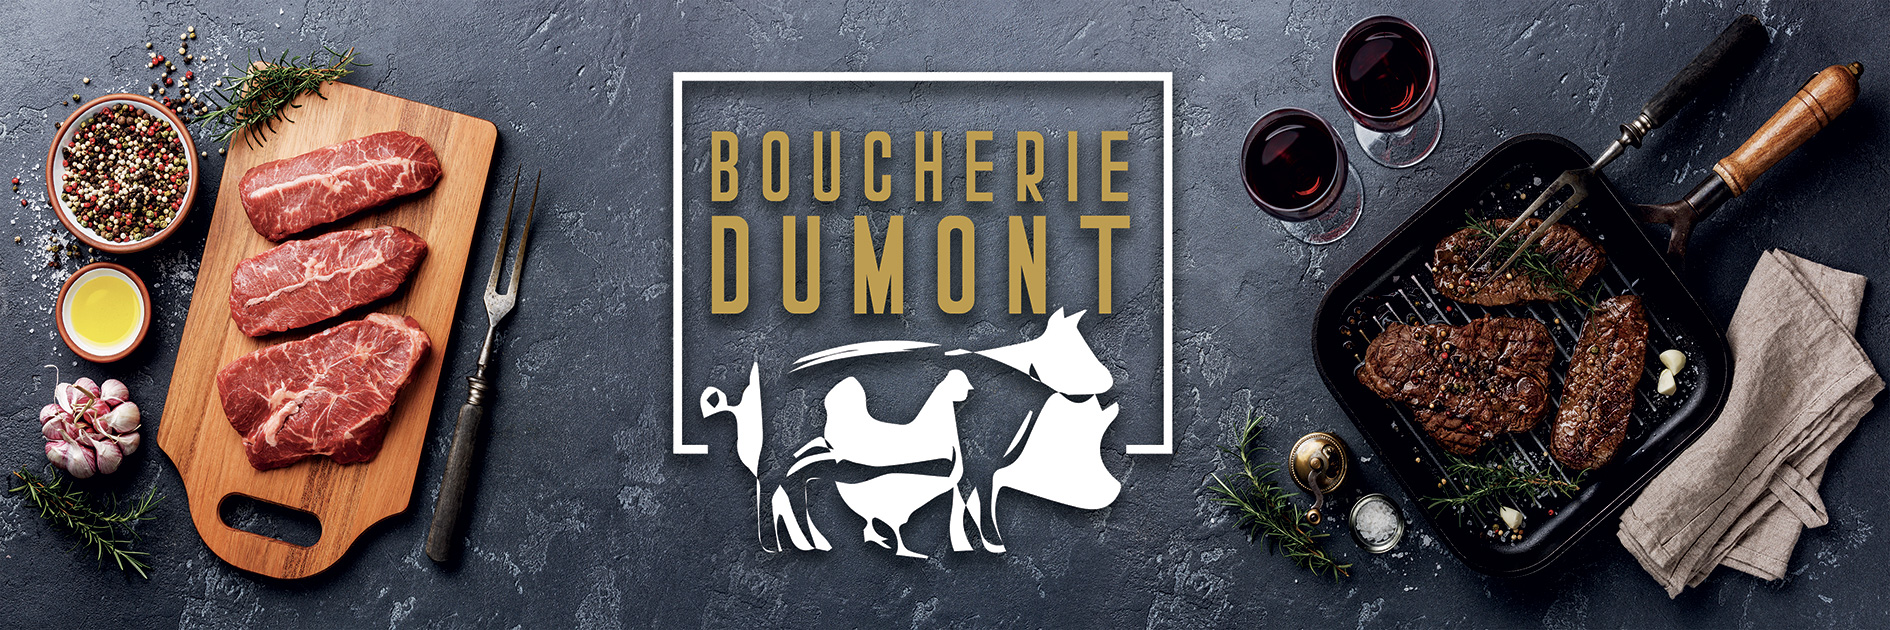 Lapostrophe_Boucherie-Dumont-logo